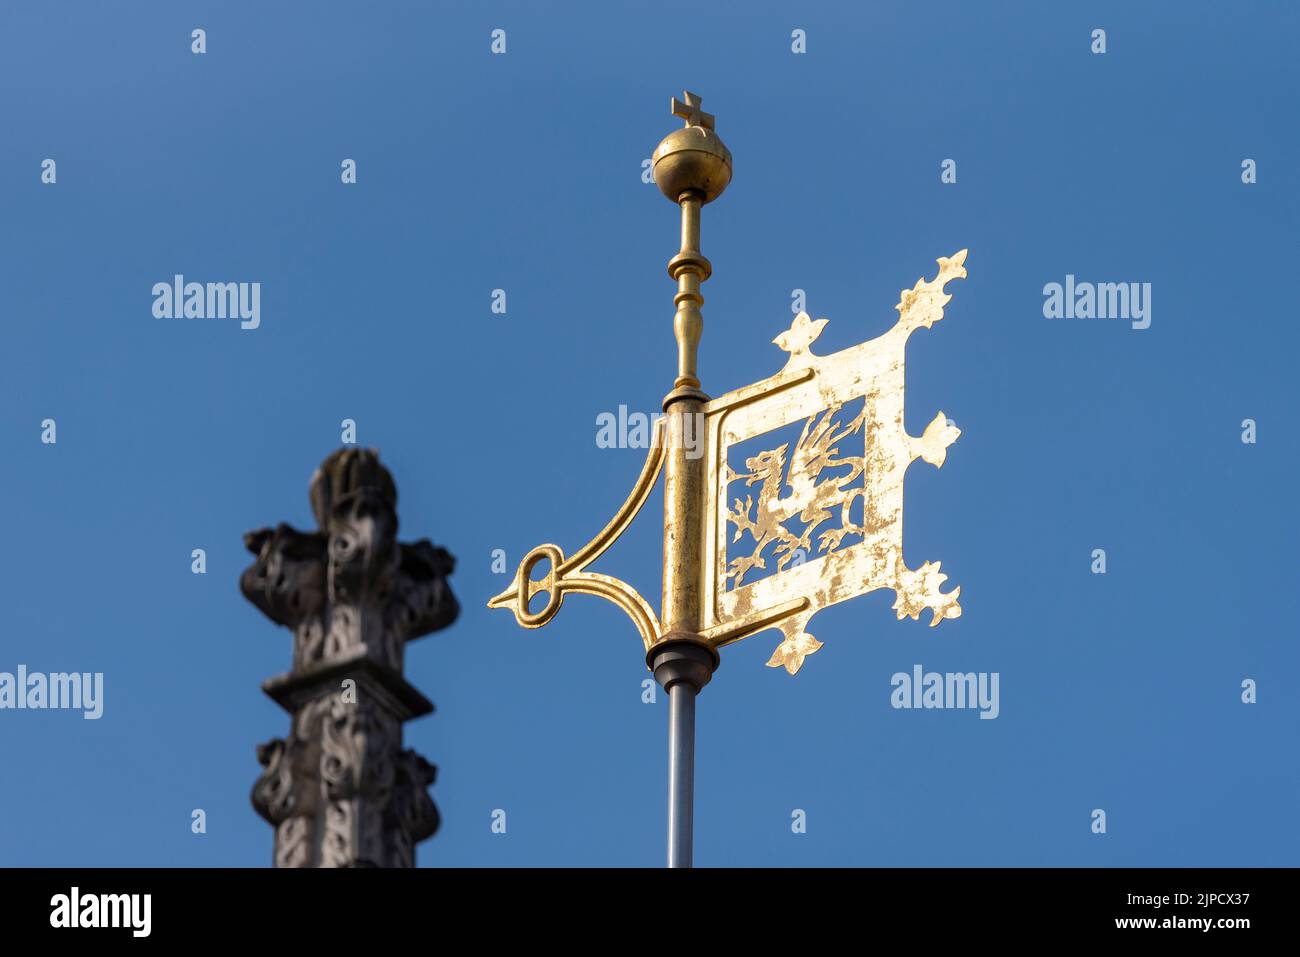 Detalle de veleta de color dorado en la Abadía de Westminster en la ciudad de Westminster, Londres, Reino Unido. Enrique VII Capilla del extremo este de la Abadía. Dragón heráldico Foto de stock